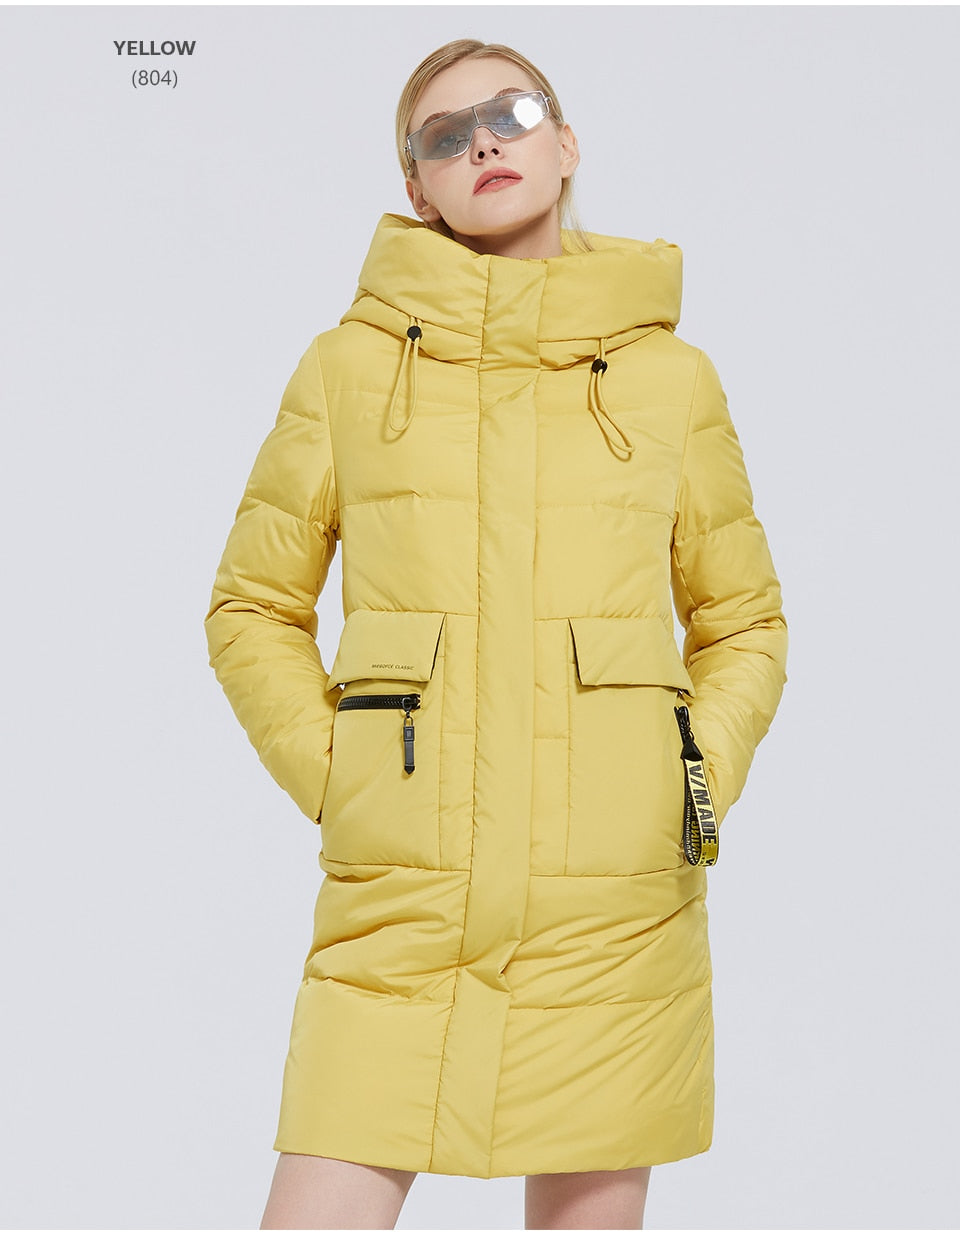 Contrast Waterproof Winter Jacket - luxebabyco